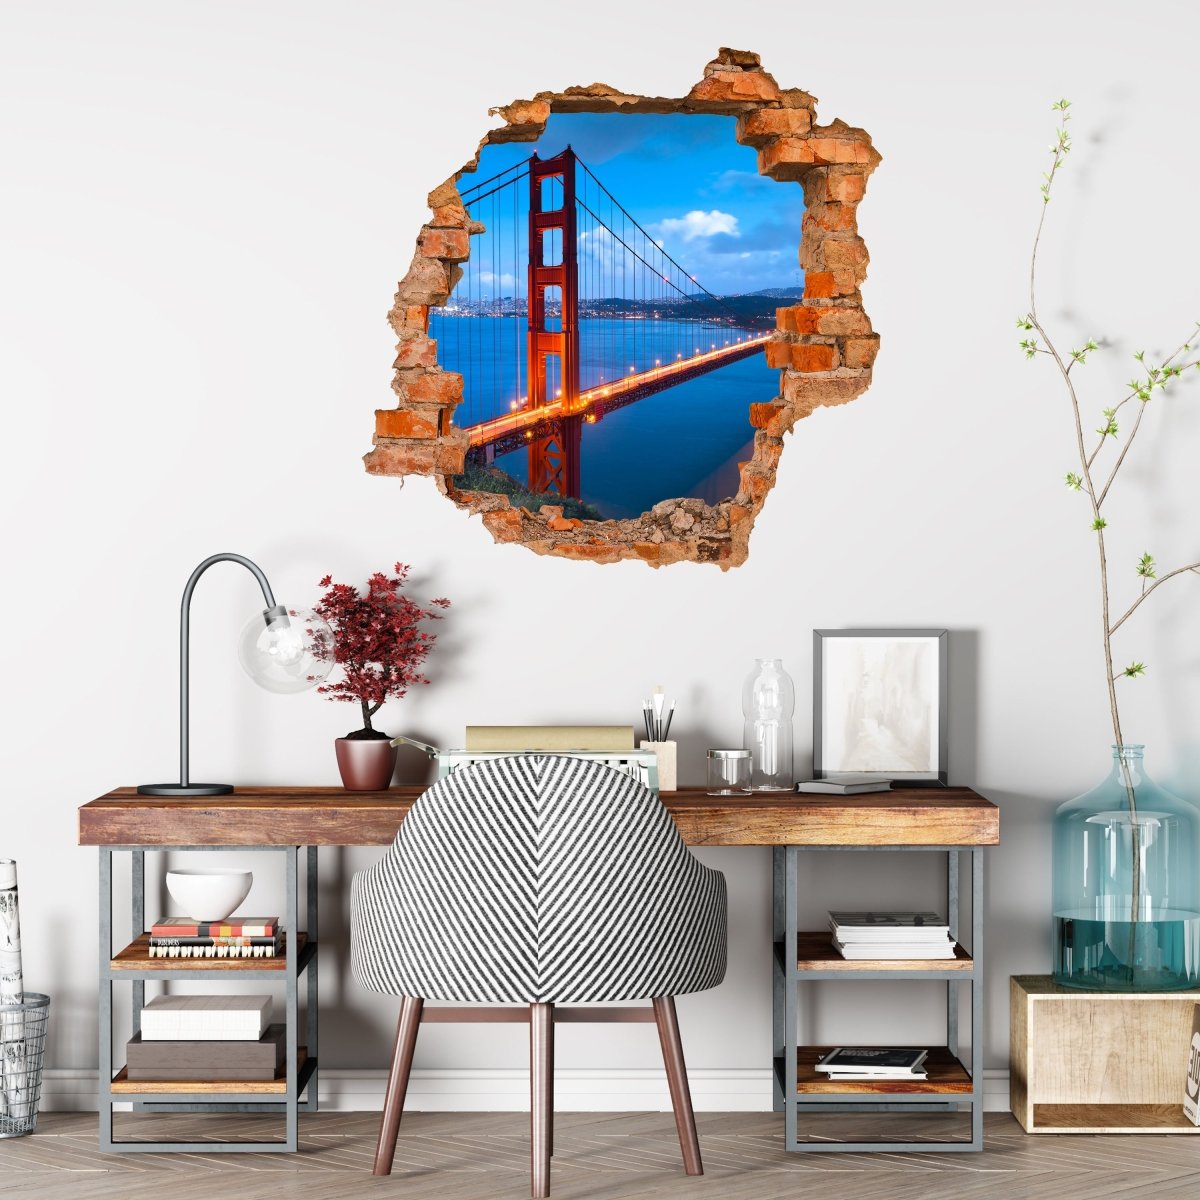 3D Wall Sticker Golden Gate Bridge - Wall Decal M0234